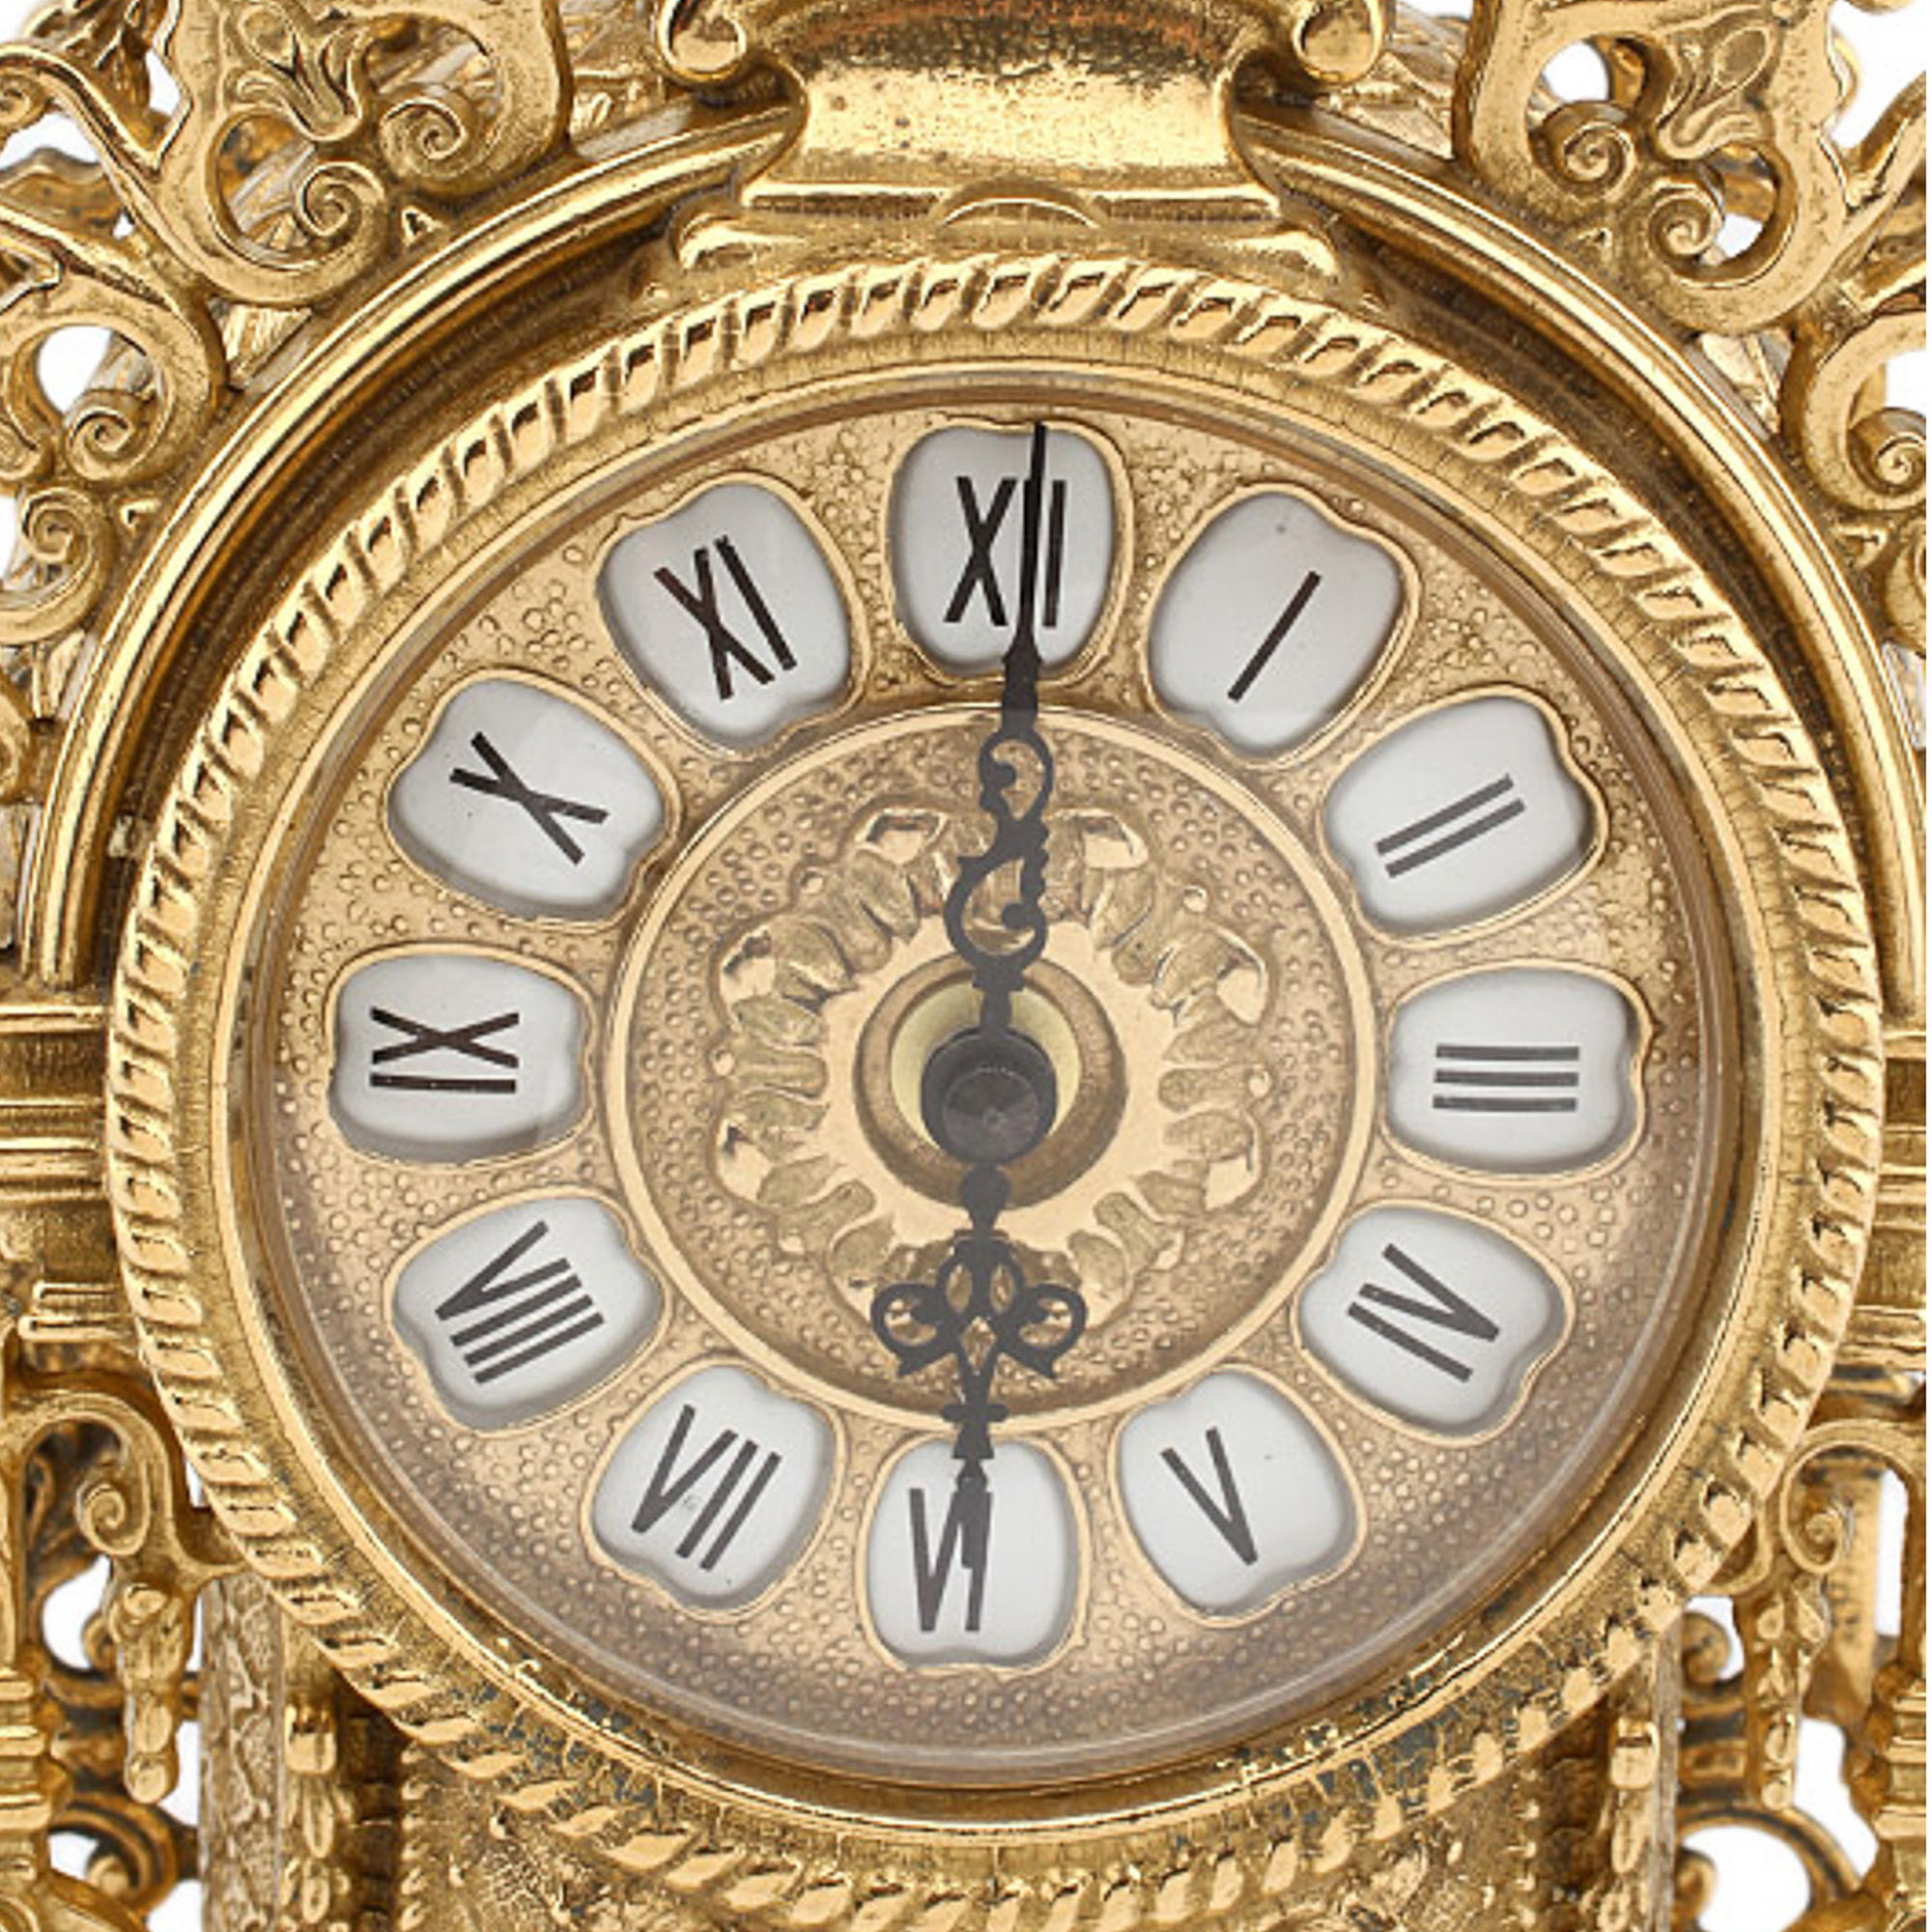 Италия часы время. Часы 414mr stilars. Часы настольные stilars Gold-1 (desktop Clock stilars Gold-1). Часы настенные золотого цвета. Итальянские настенные часы.